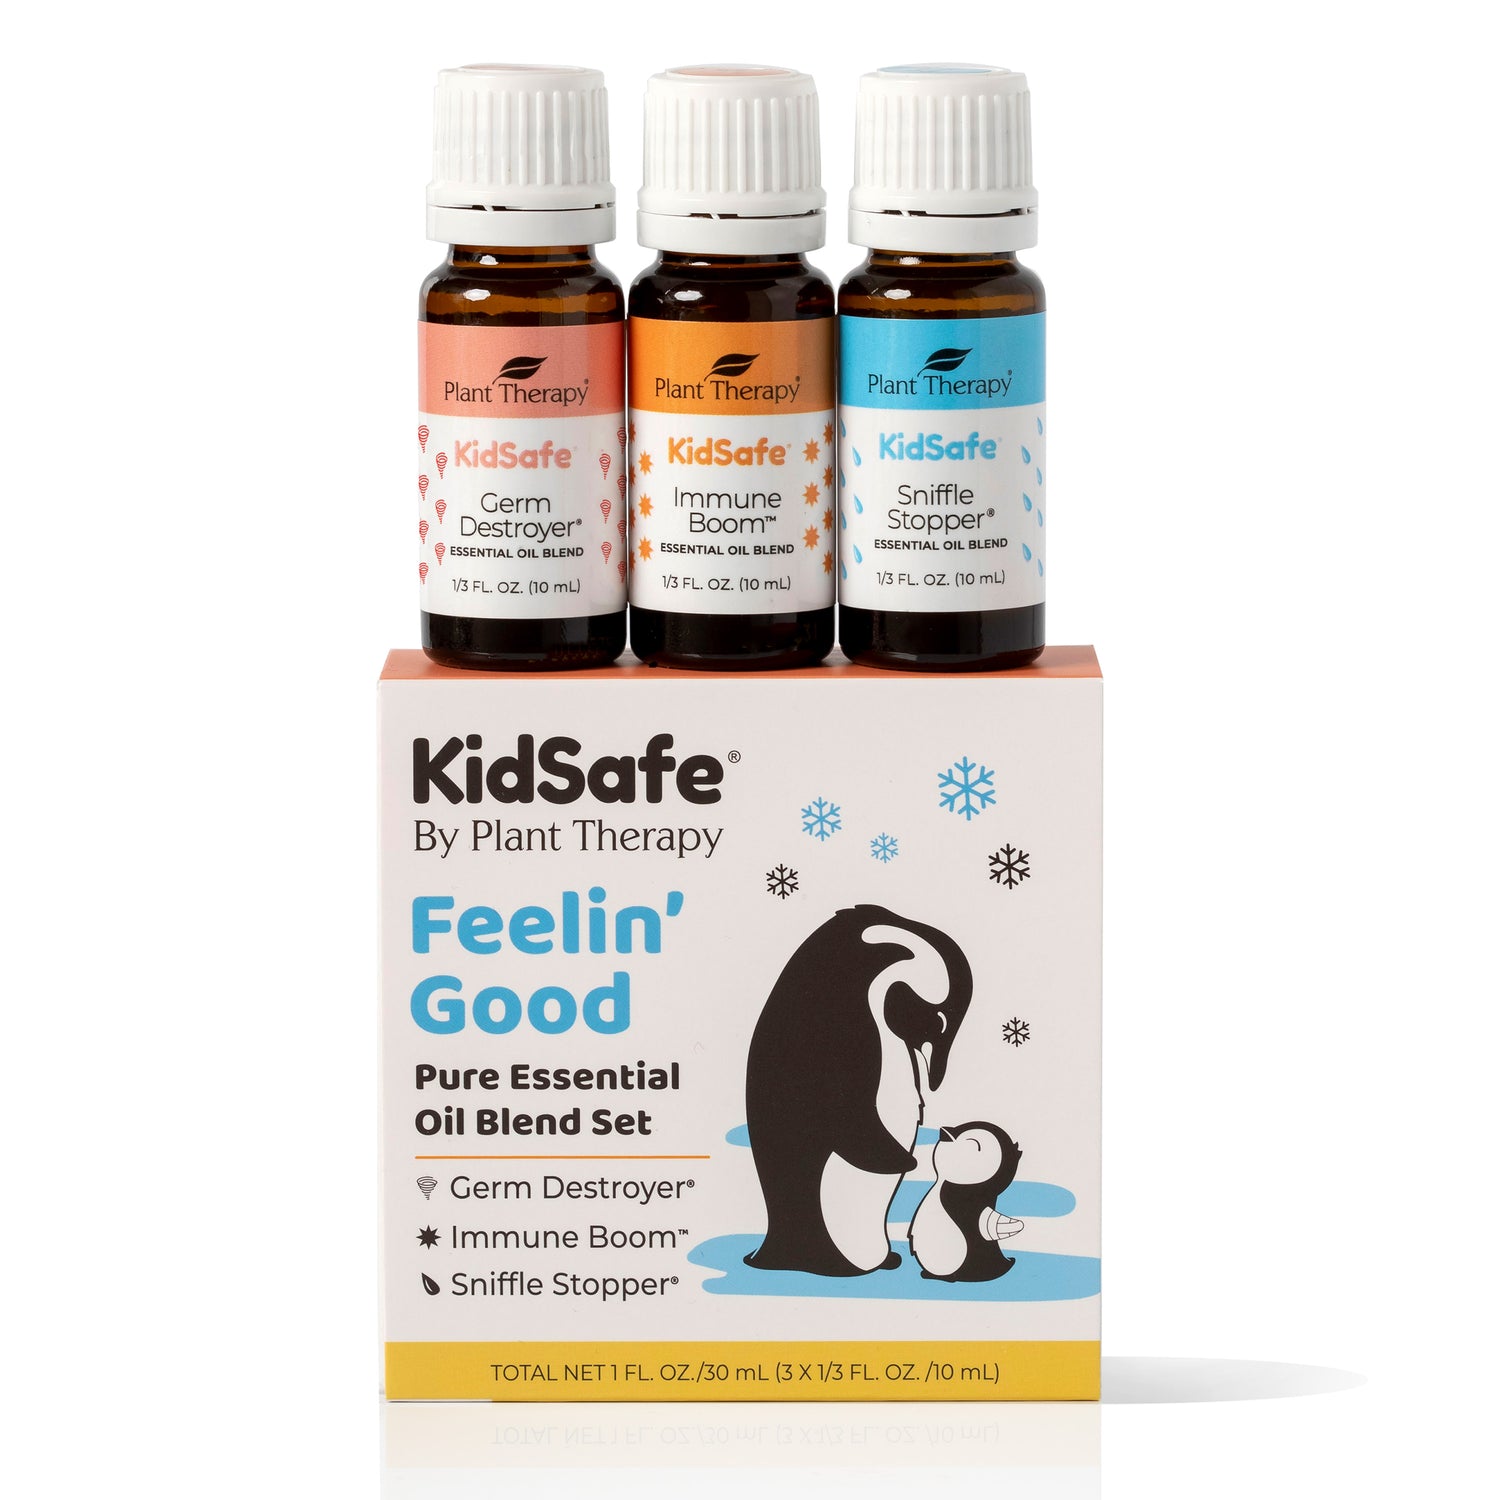 KidSafe Brand Sets